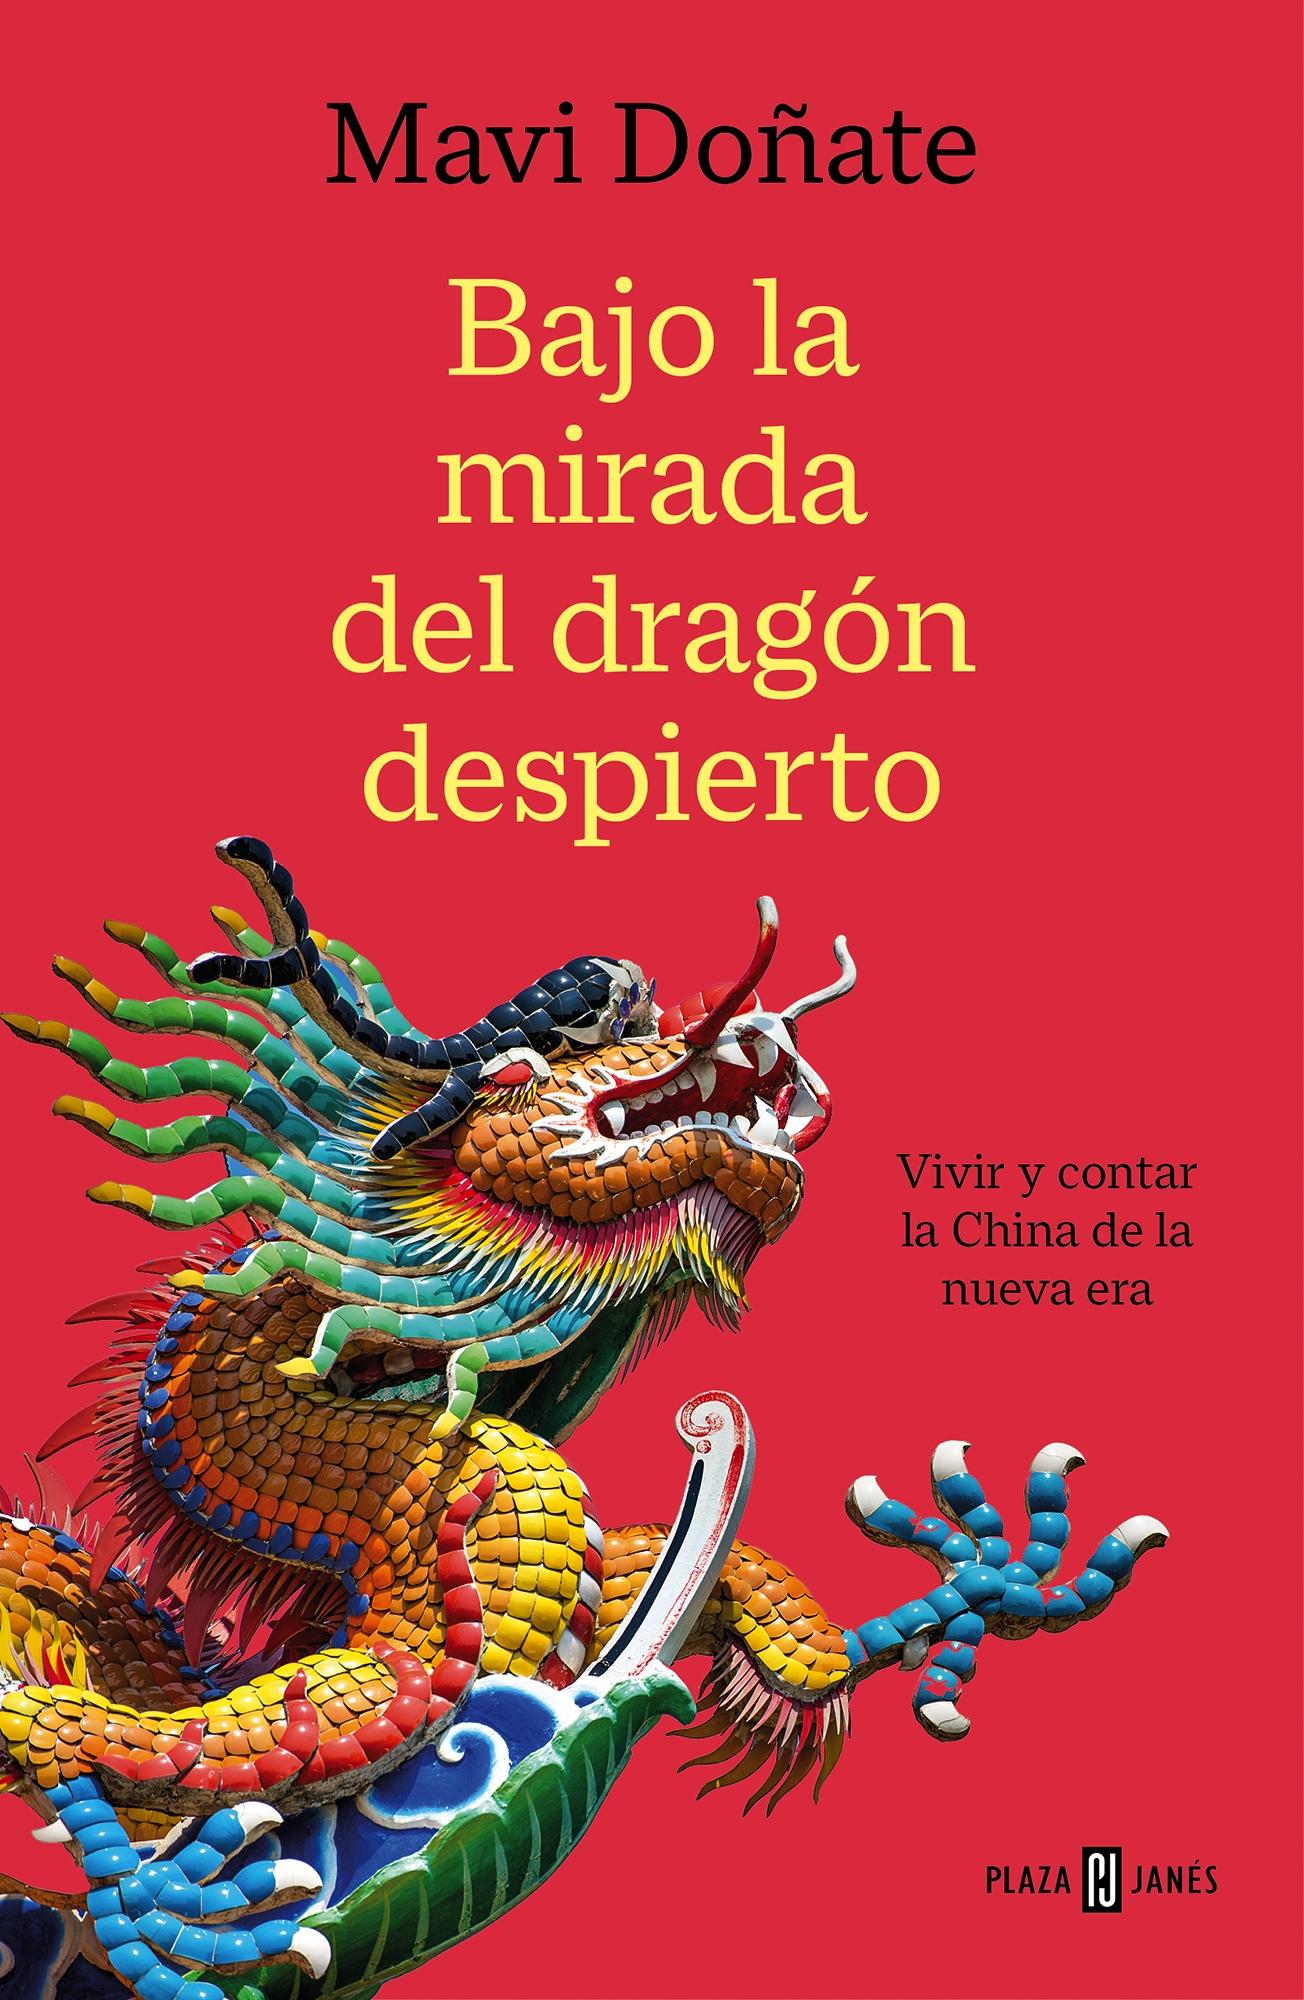 Bajo la mirada del dragón despierto "Vivir y contar la China de la nueva era"